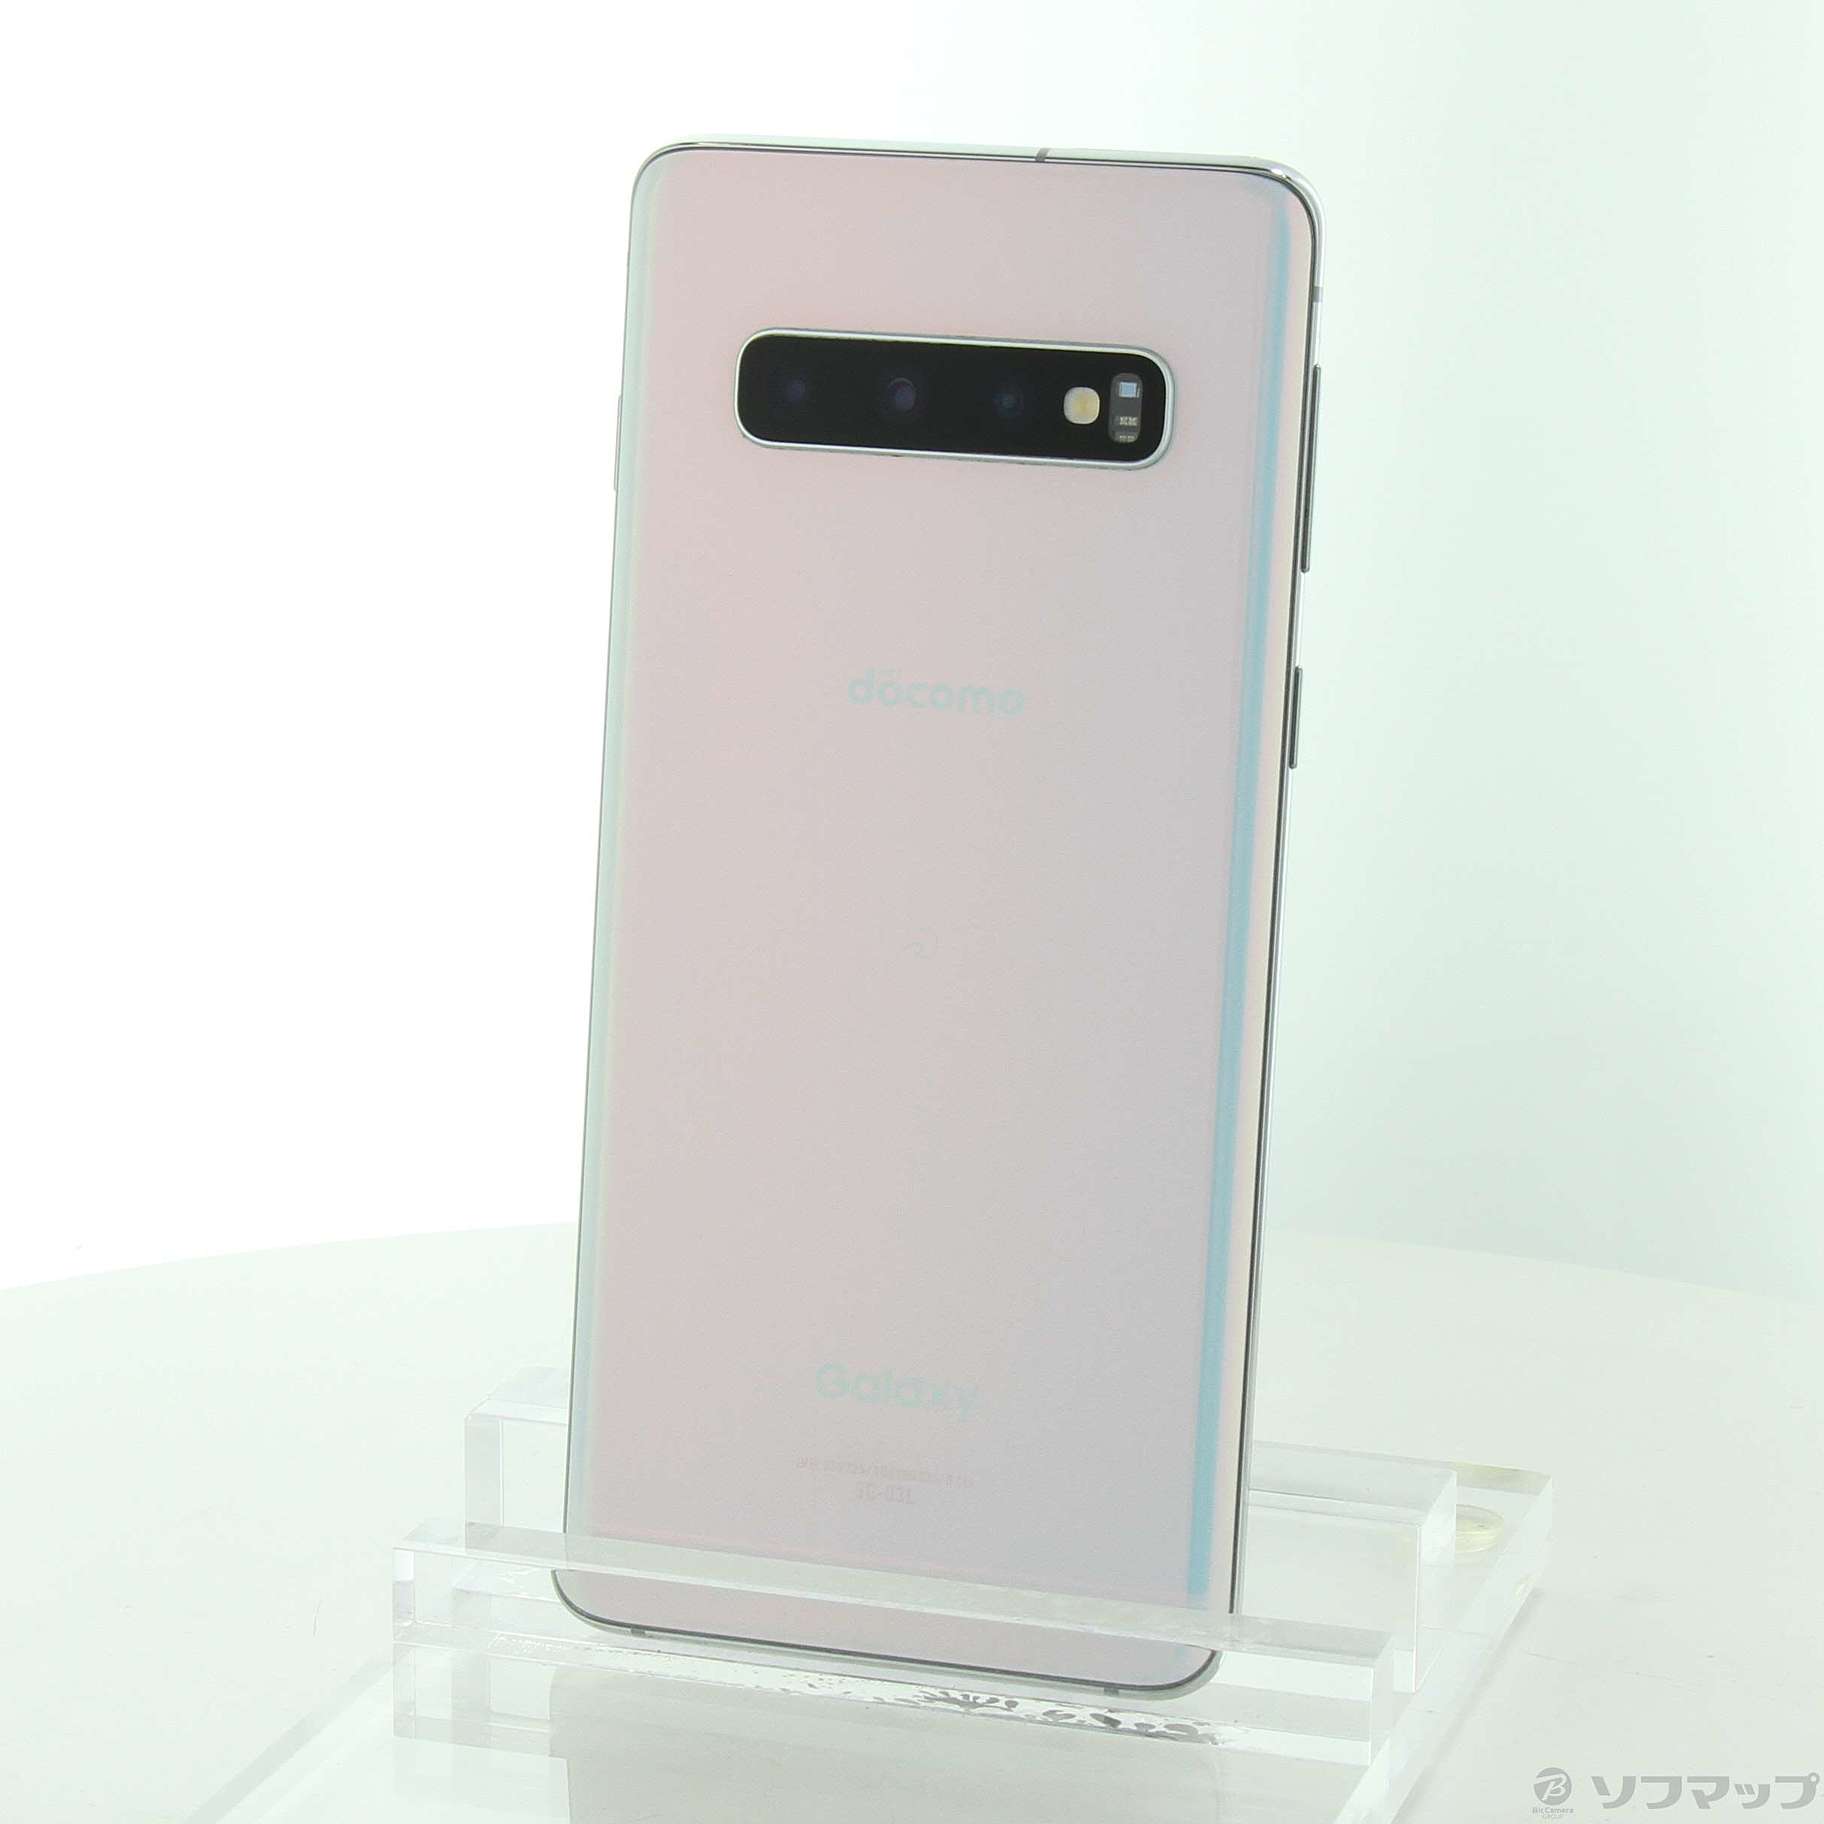 【Samsung】 Galaxy S10 + 128gb 【Simフリー】